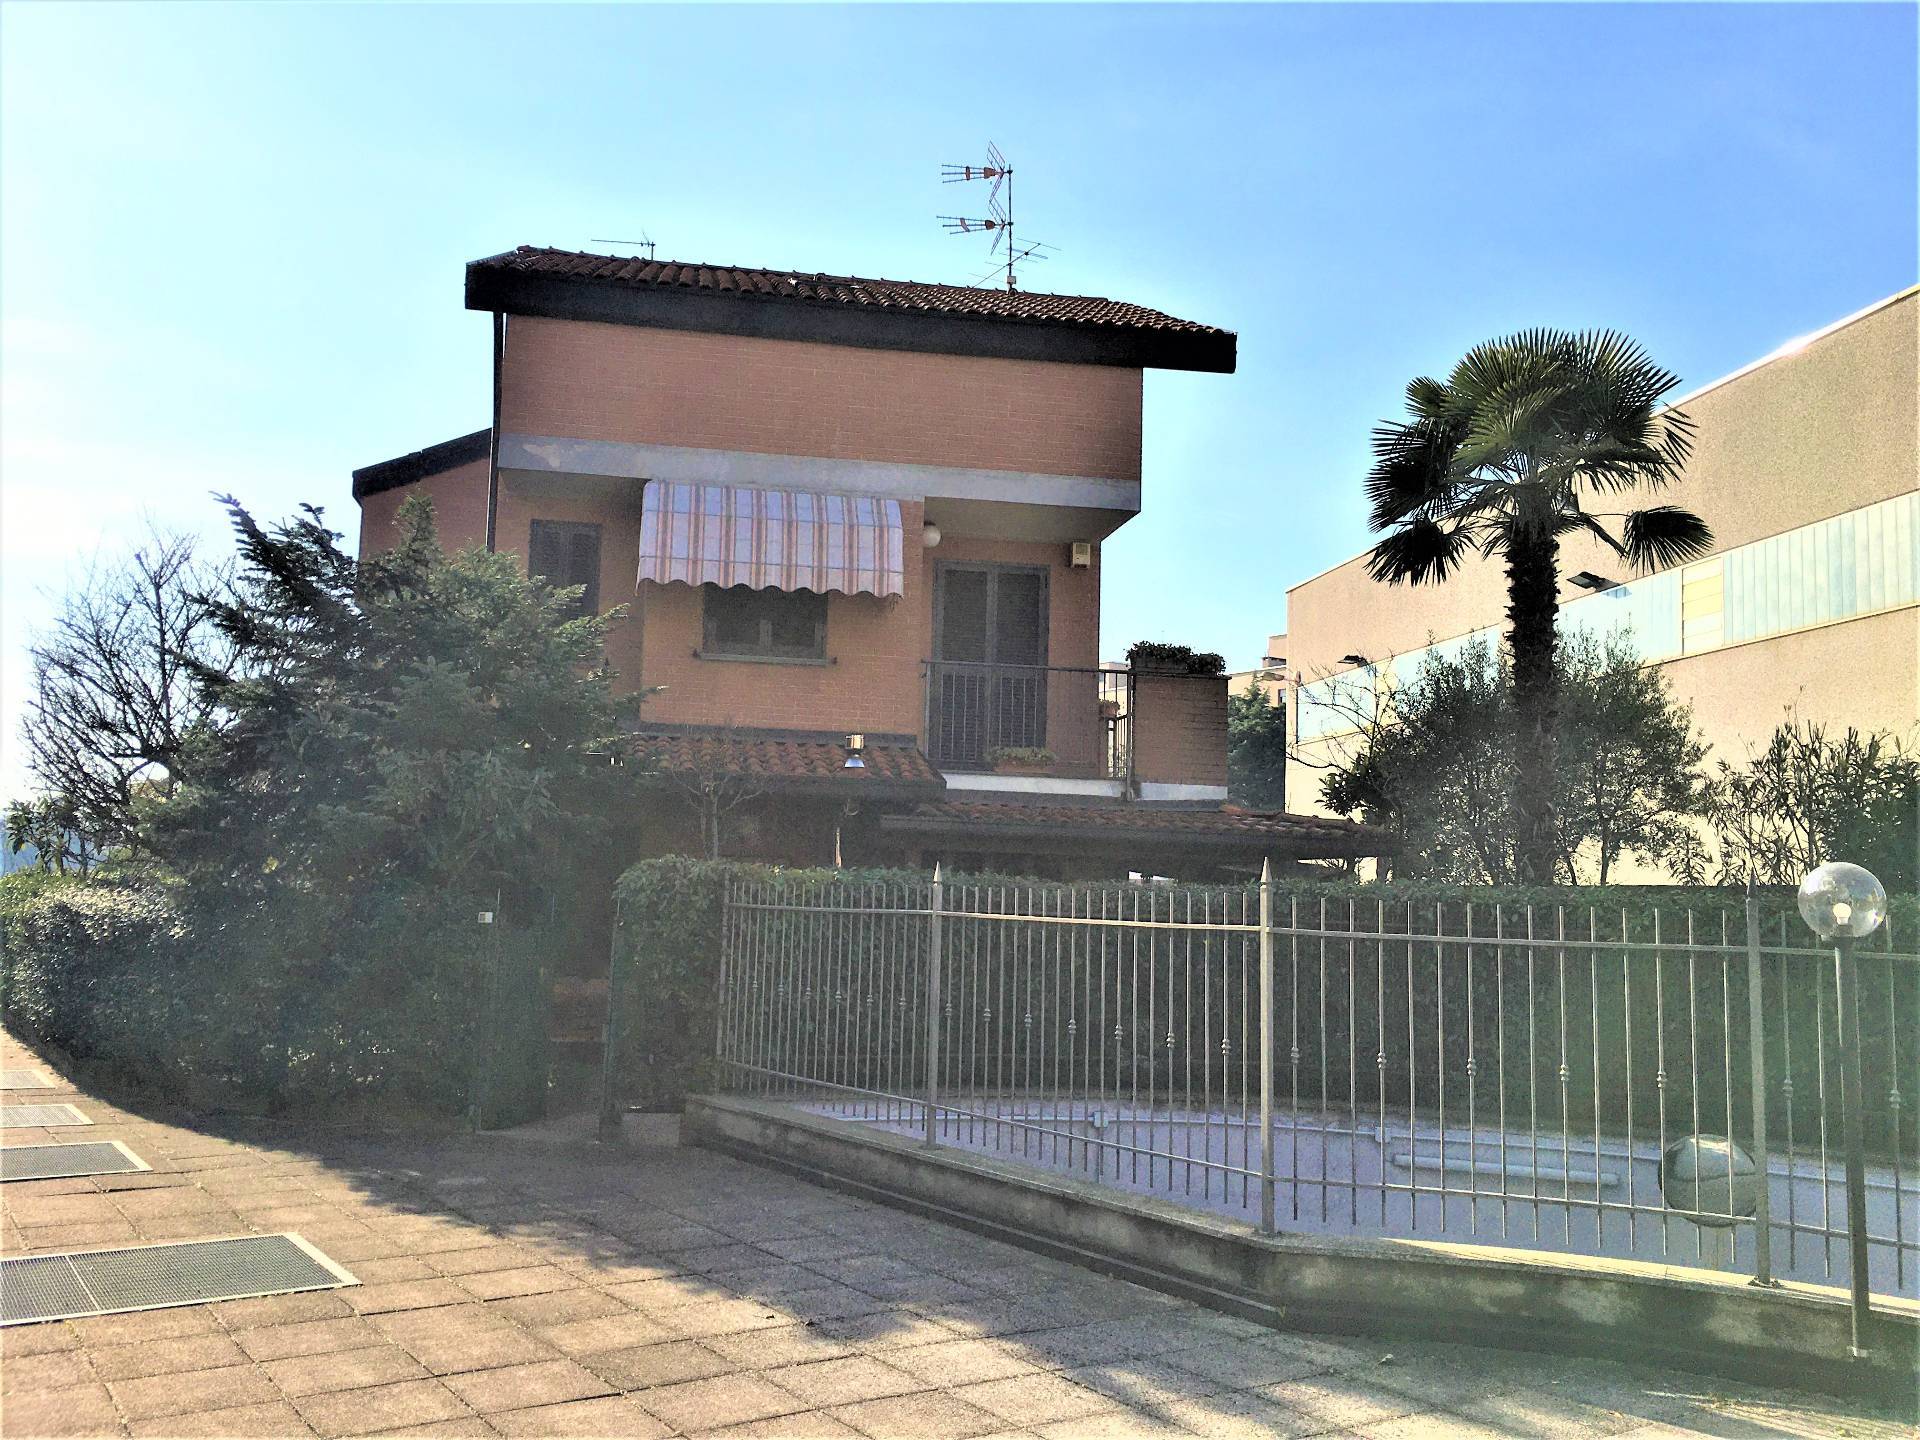 Villa Bifamiliare in vendita a Caronno Pertusella, 5 locali, prezzo € 310.000 | PortaleAgenzieImmobiliari.it